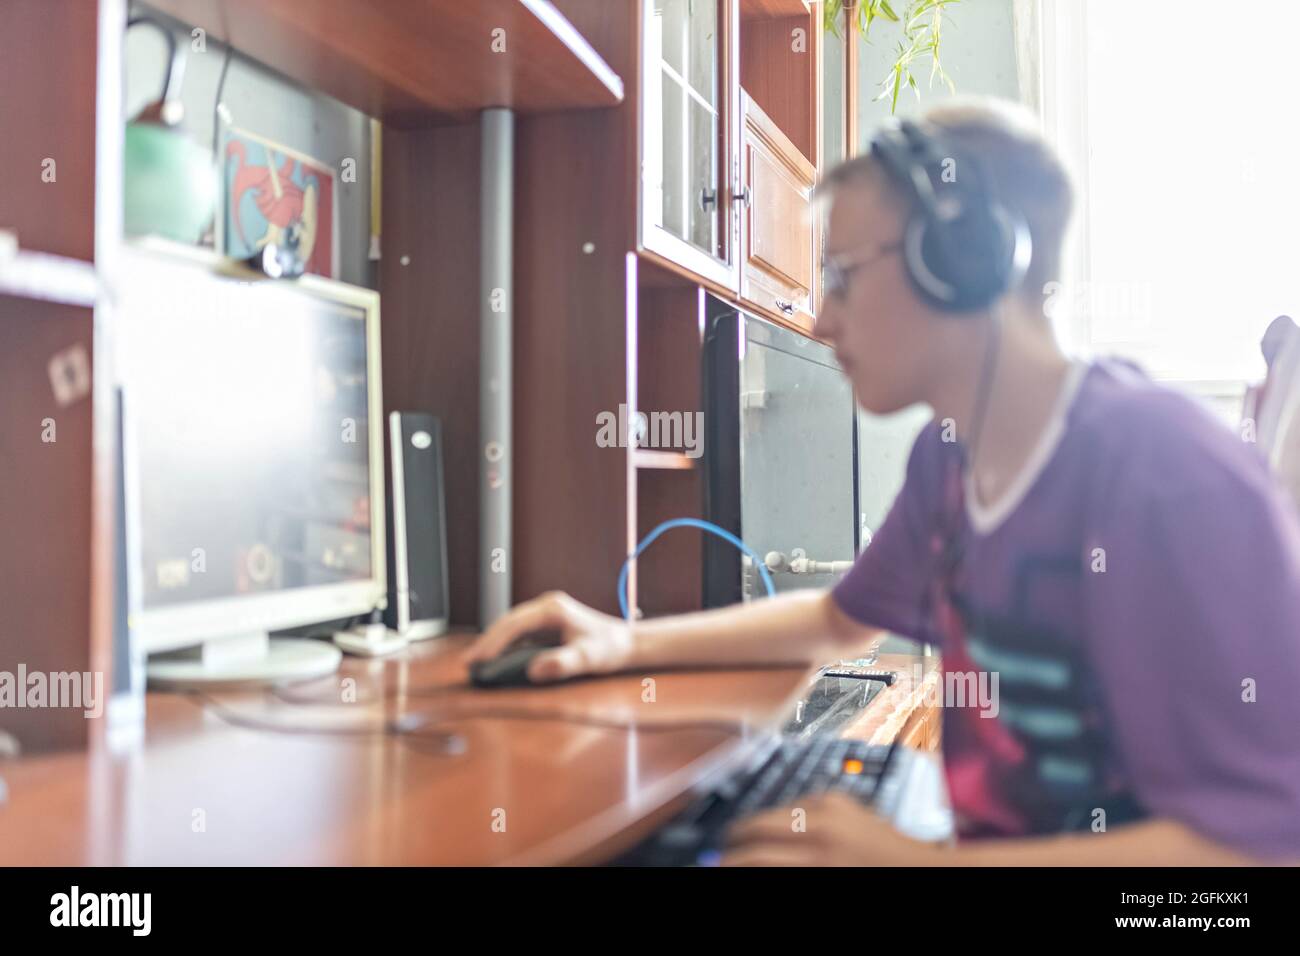 Un adolescente, un joven jugando a videojuegos en una computadora, usando tecnología, usando auriculares, usando un hombre joven, un adolescente usando tec Foto de stock